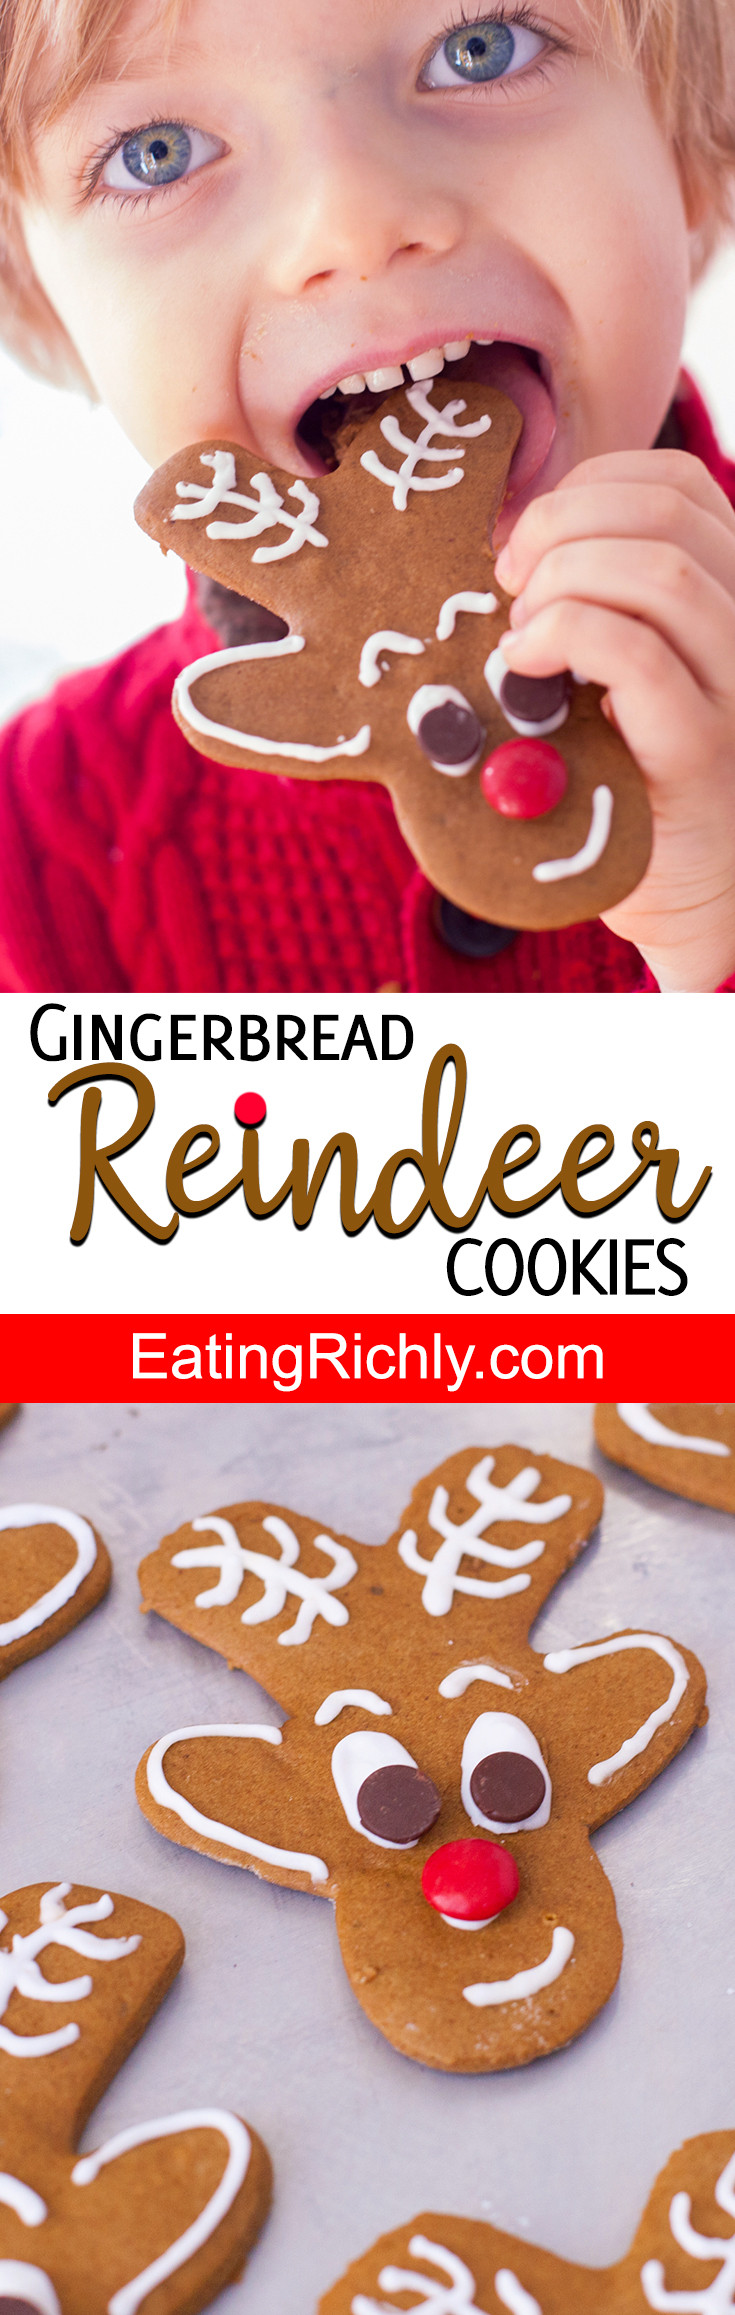 Reindeer Gingerbread Man Cookies
 Reindeer Gingerbread Cookies from Gingerbread Men